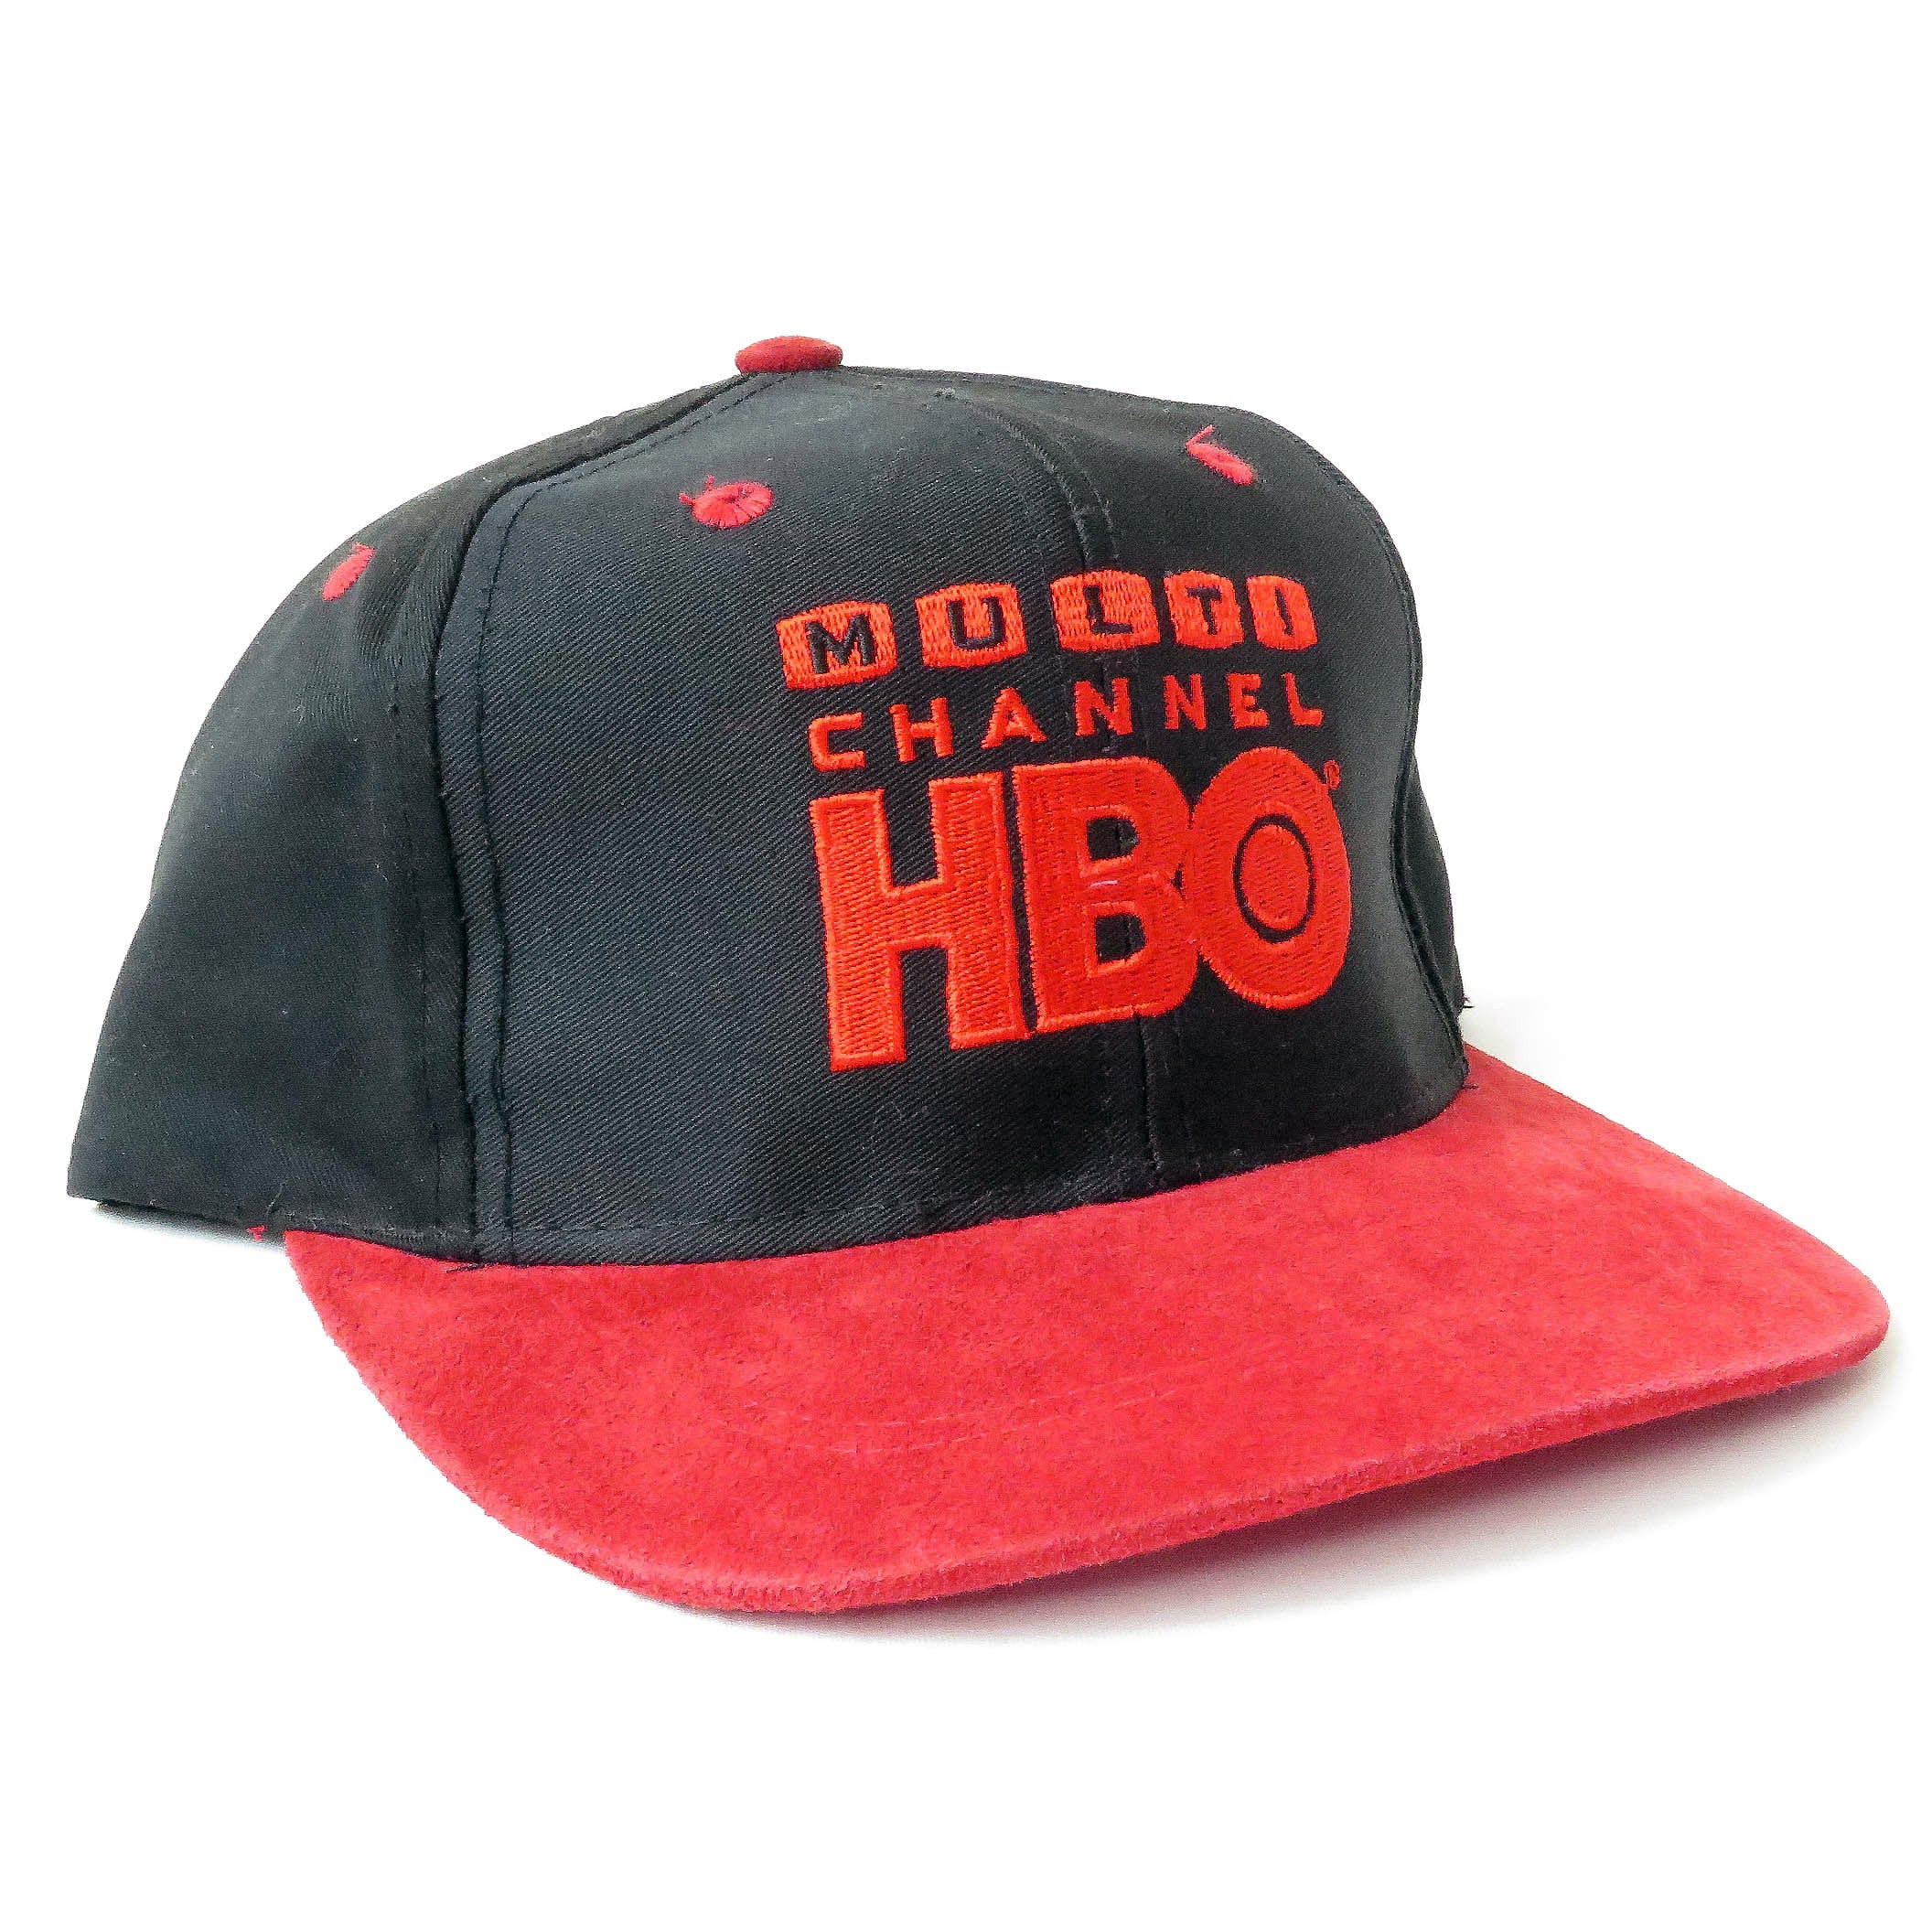 Vintage Multi Channel HBO Snapback Hat